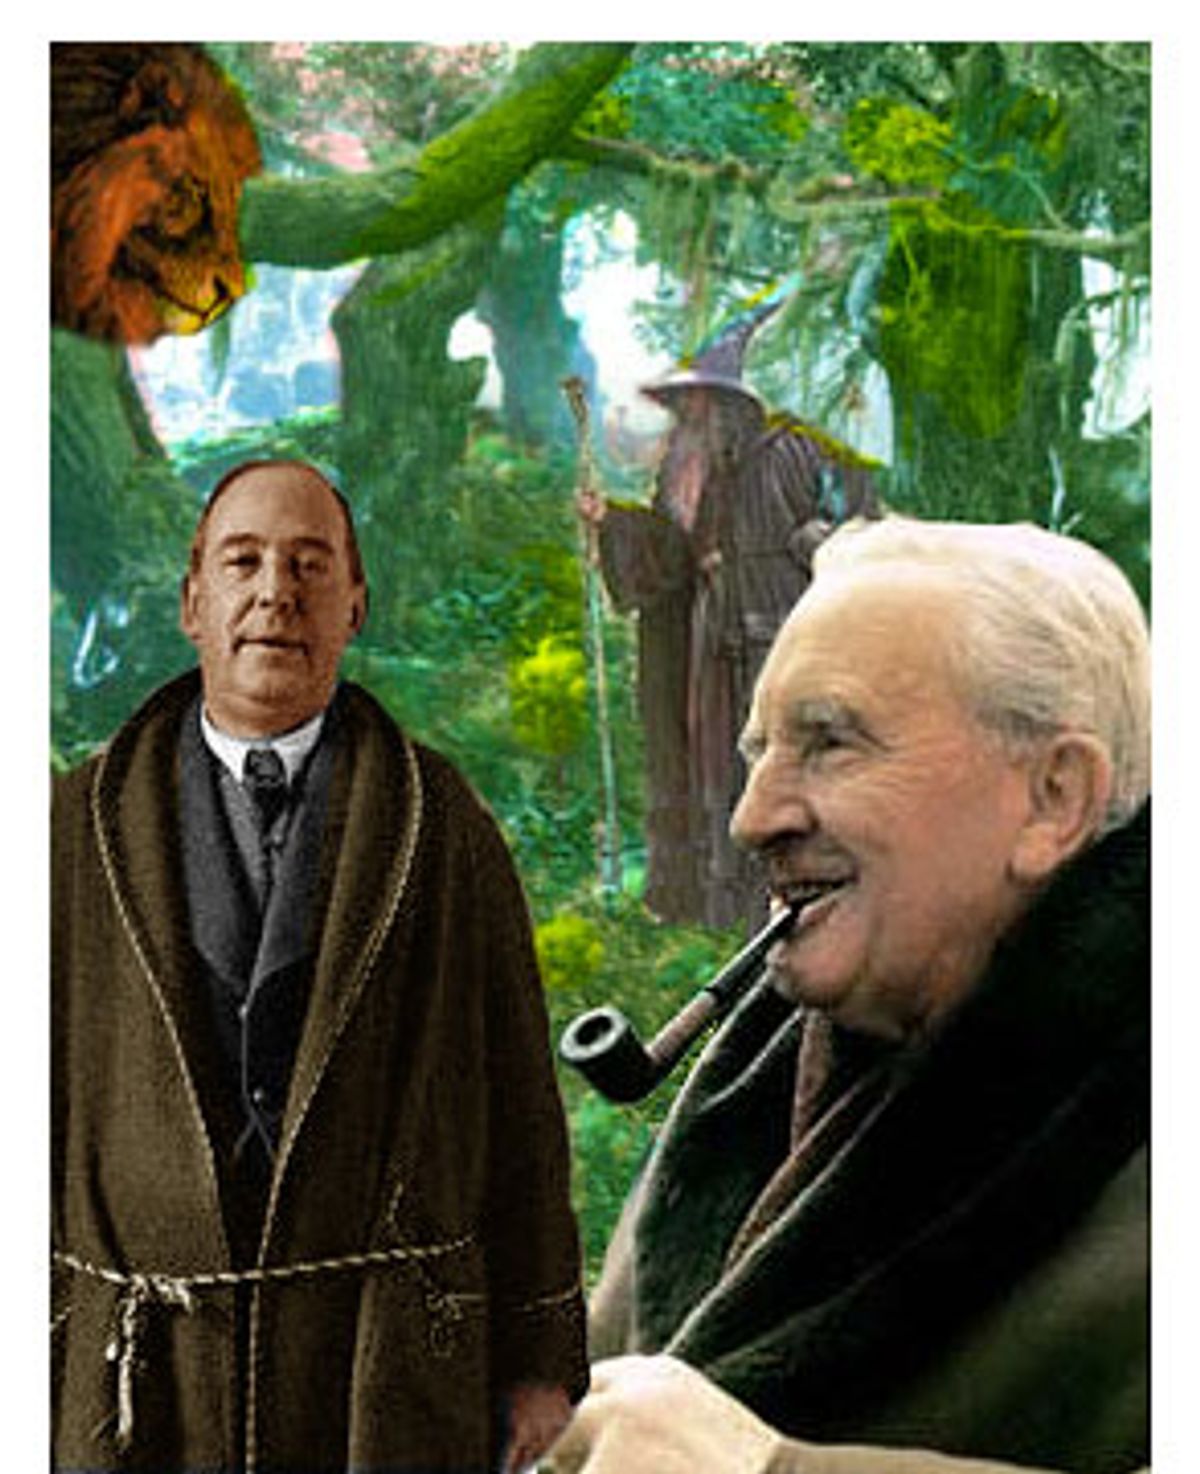 Third Age: Total War - Tolkien Gateway